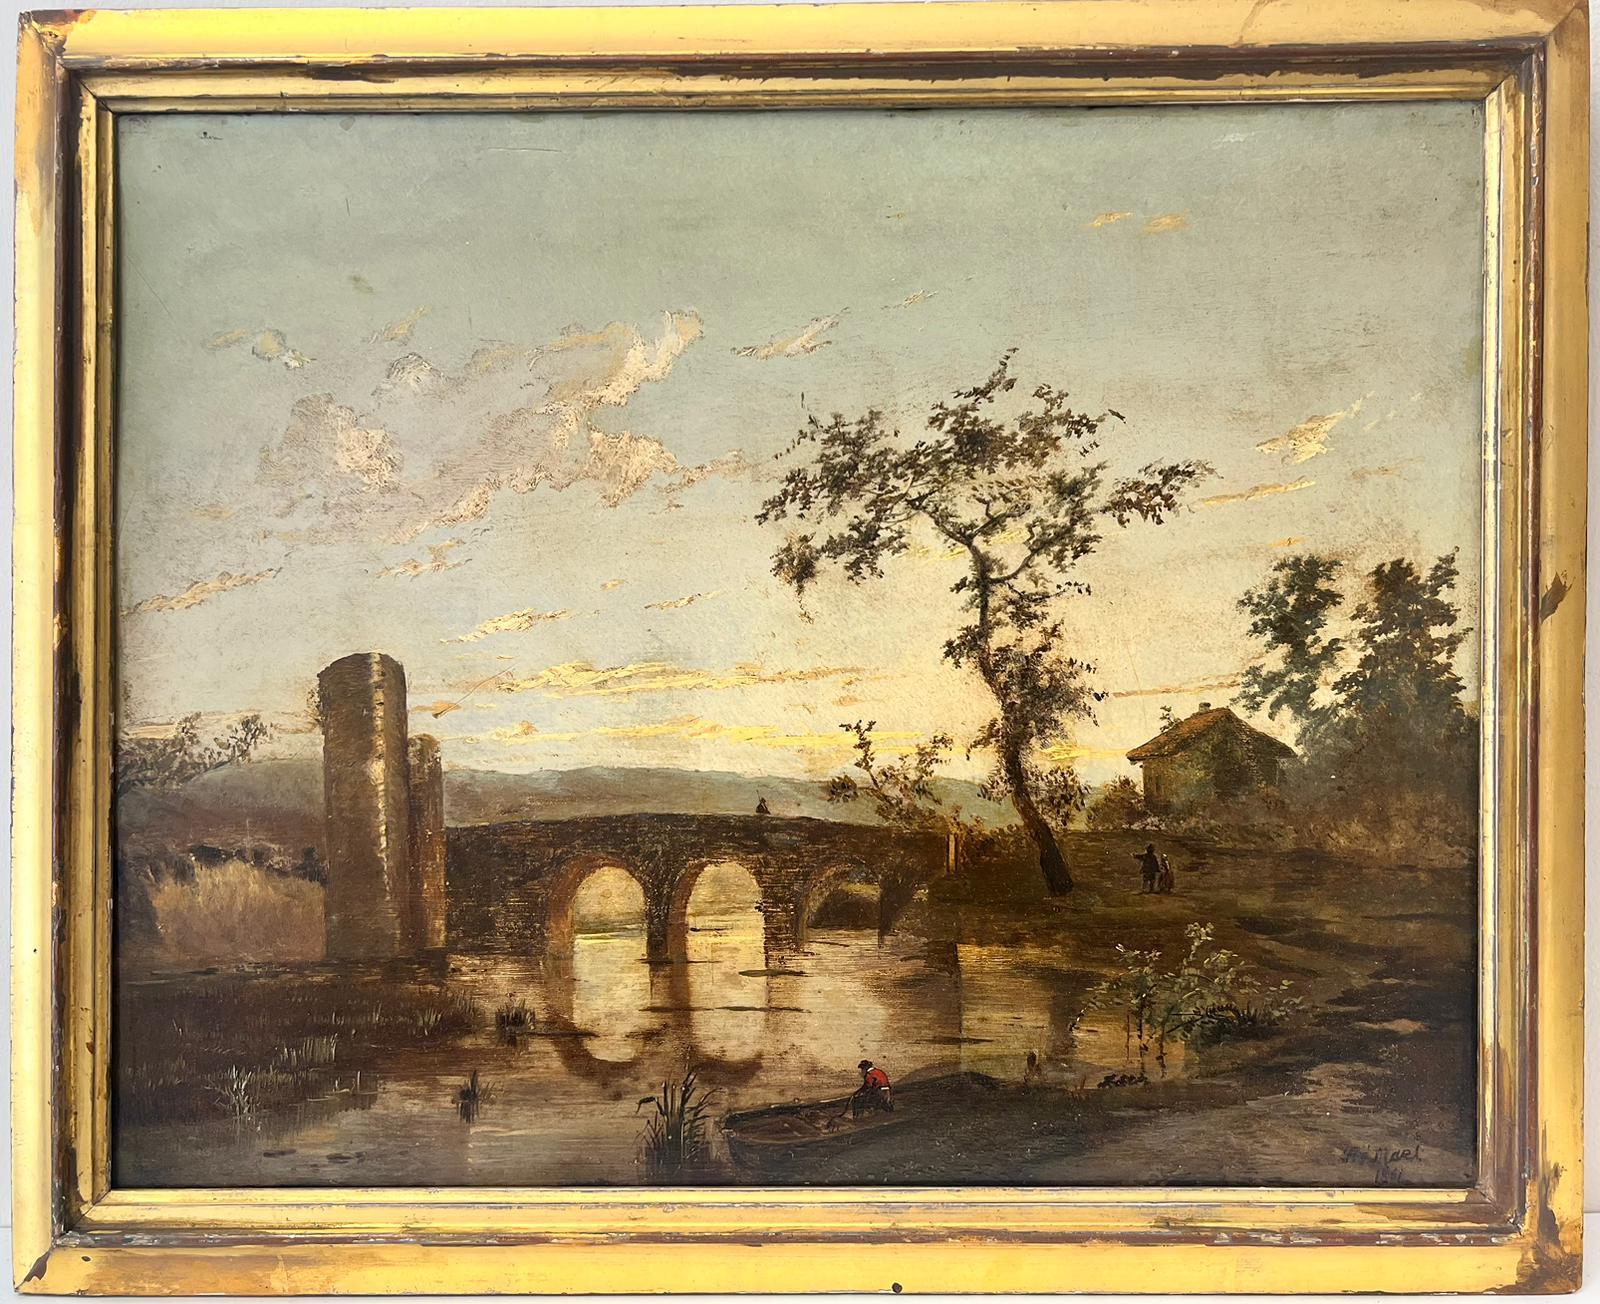 Romantische Landschaft, Sonnenuntergang, Figuren, Fluss- und Bogenbogen, Öl  – Painting von 19th century Dutch School